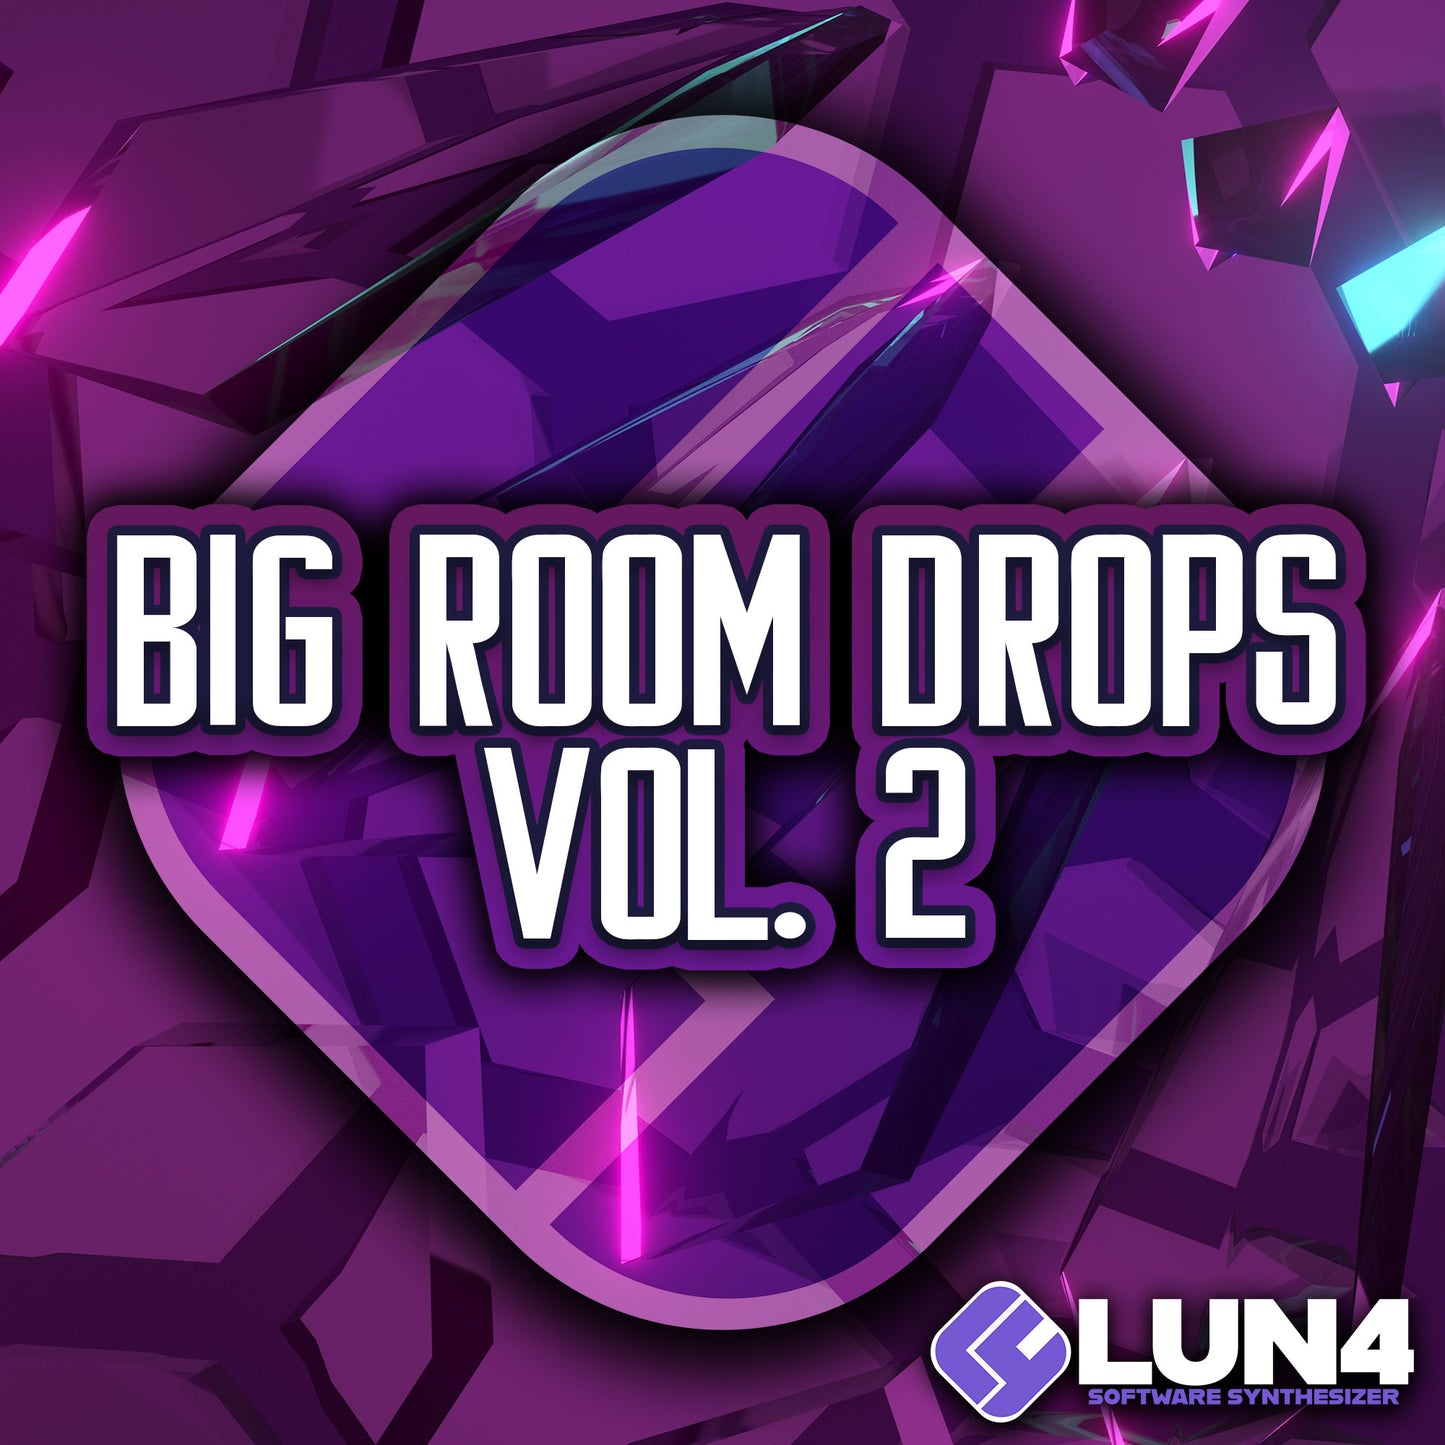 LUN4 Bank - Big Room Drops Vol 2